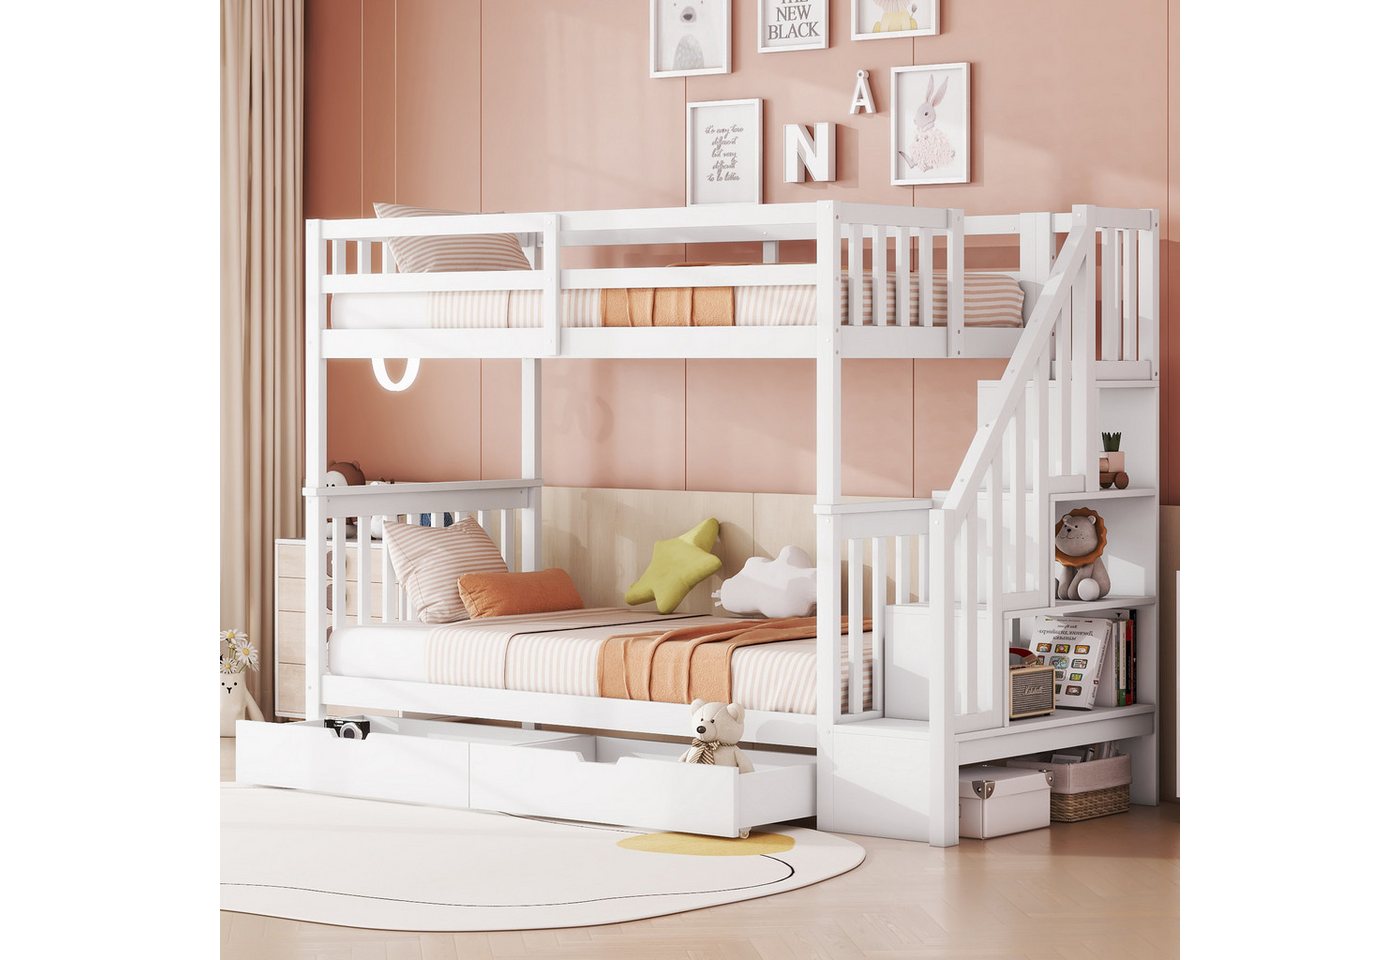 MODFU Etagenbett Kinderbett (Treppenregal, ausgestattet mit zwei Schubladen, hohe Geländer, 90*200cm), ohne Matratze von MODFU